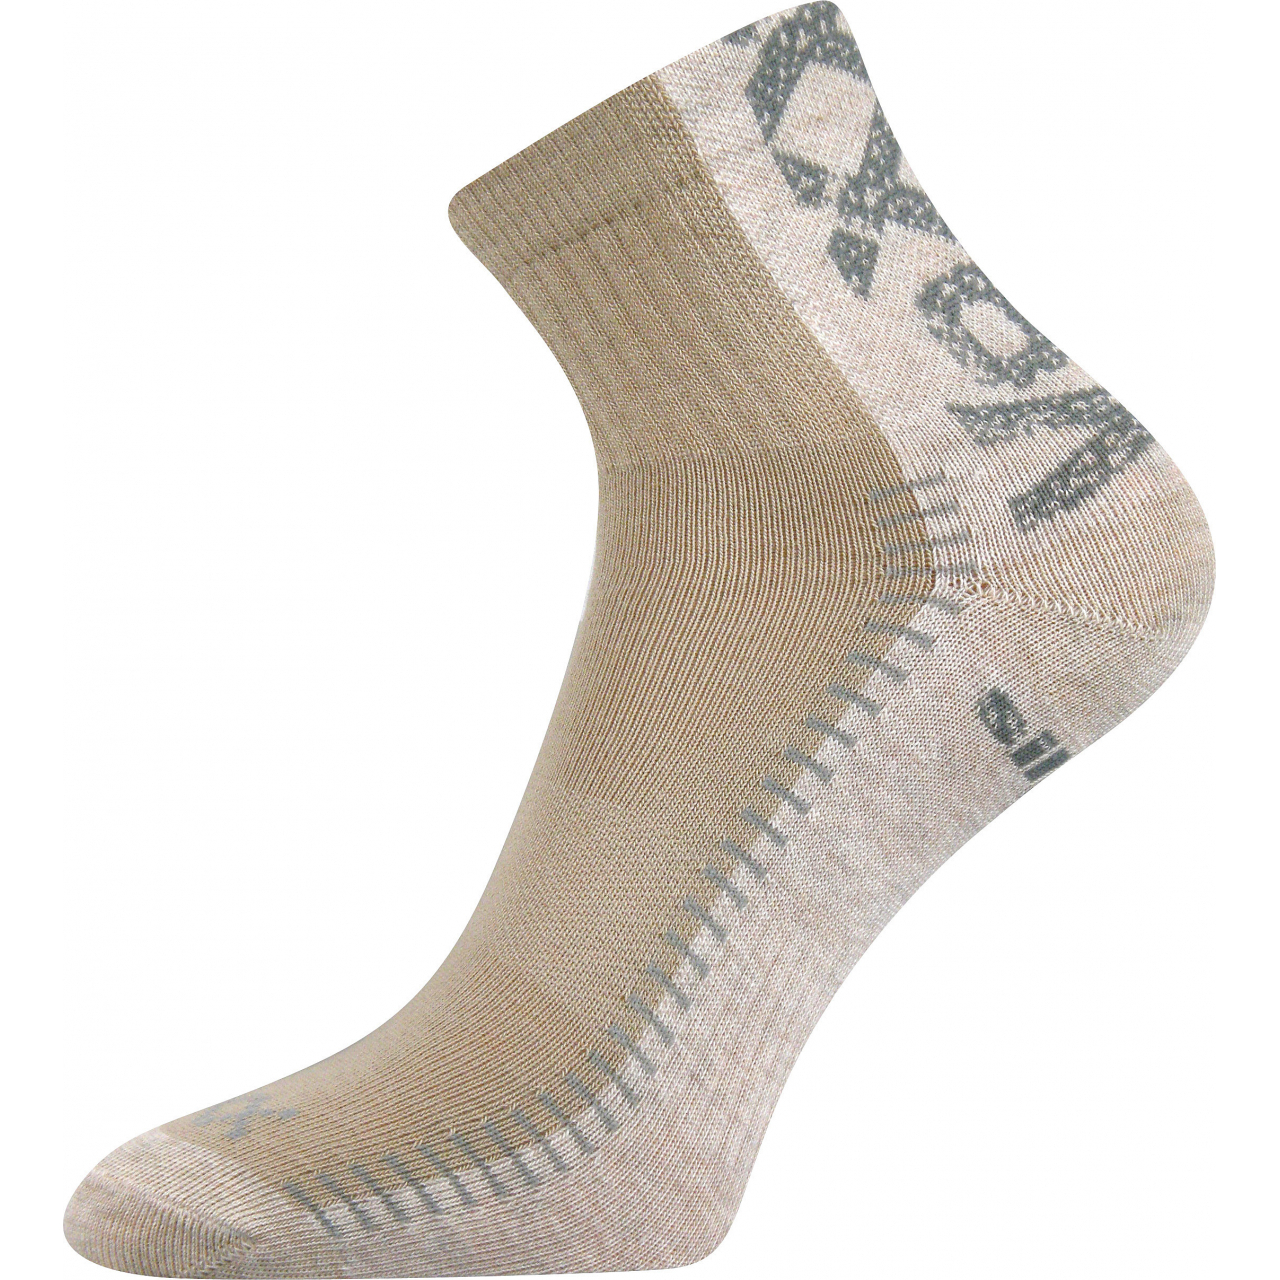 Ponožky sportovní Voxx Revolt - béžové-pískové, 35-38